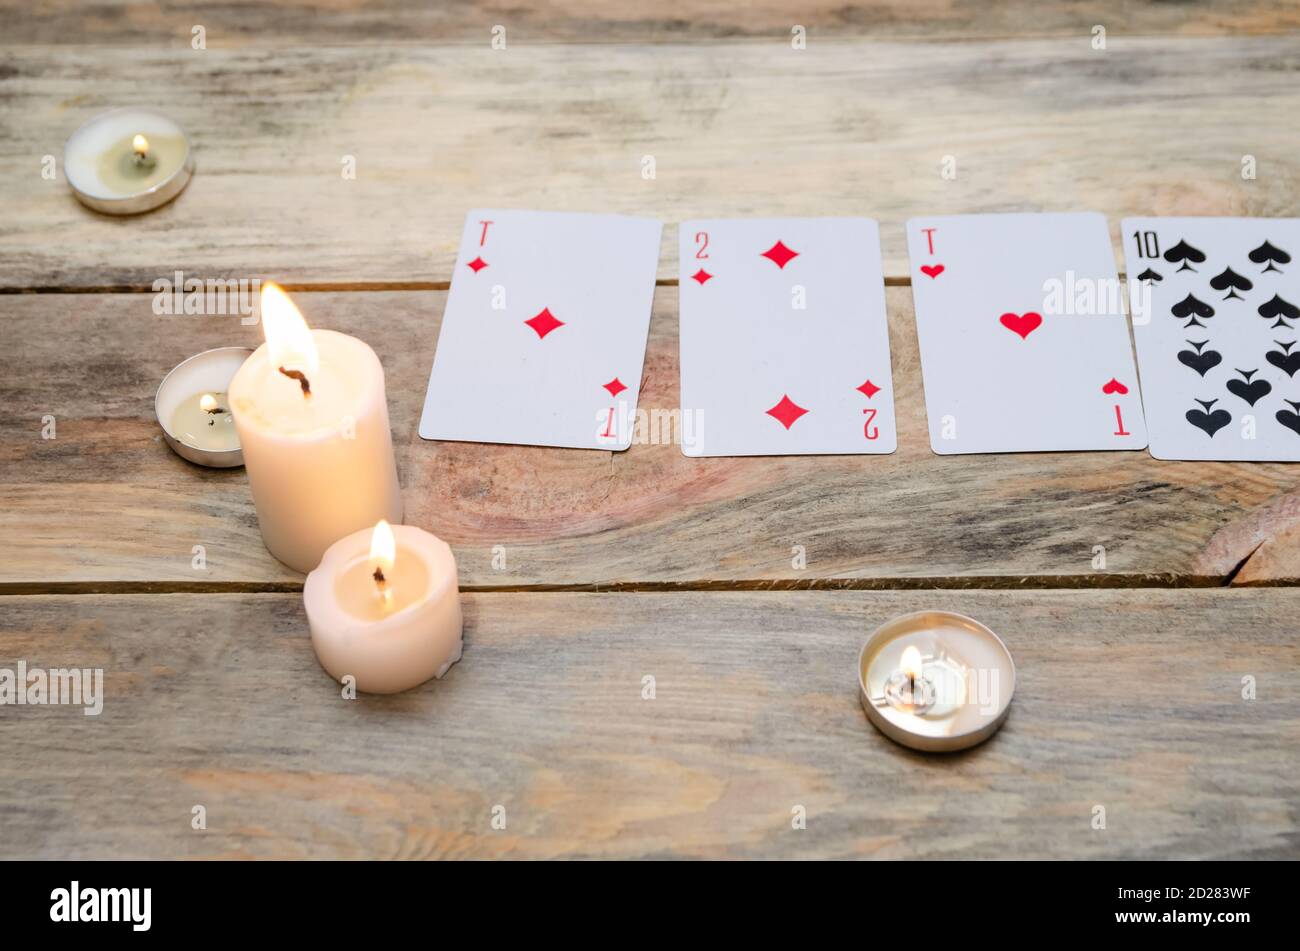 Karten für Weissagung oder Spiele, brennende Kerzen auf einem Holztisch. Konzept der Magie, Weissagung Stockfoto